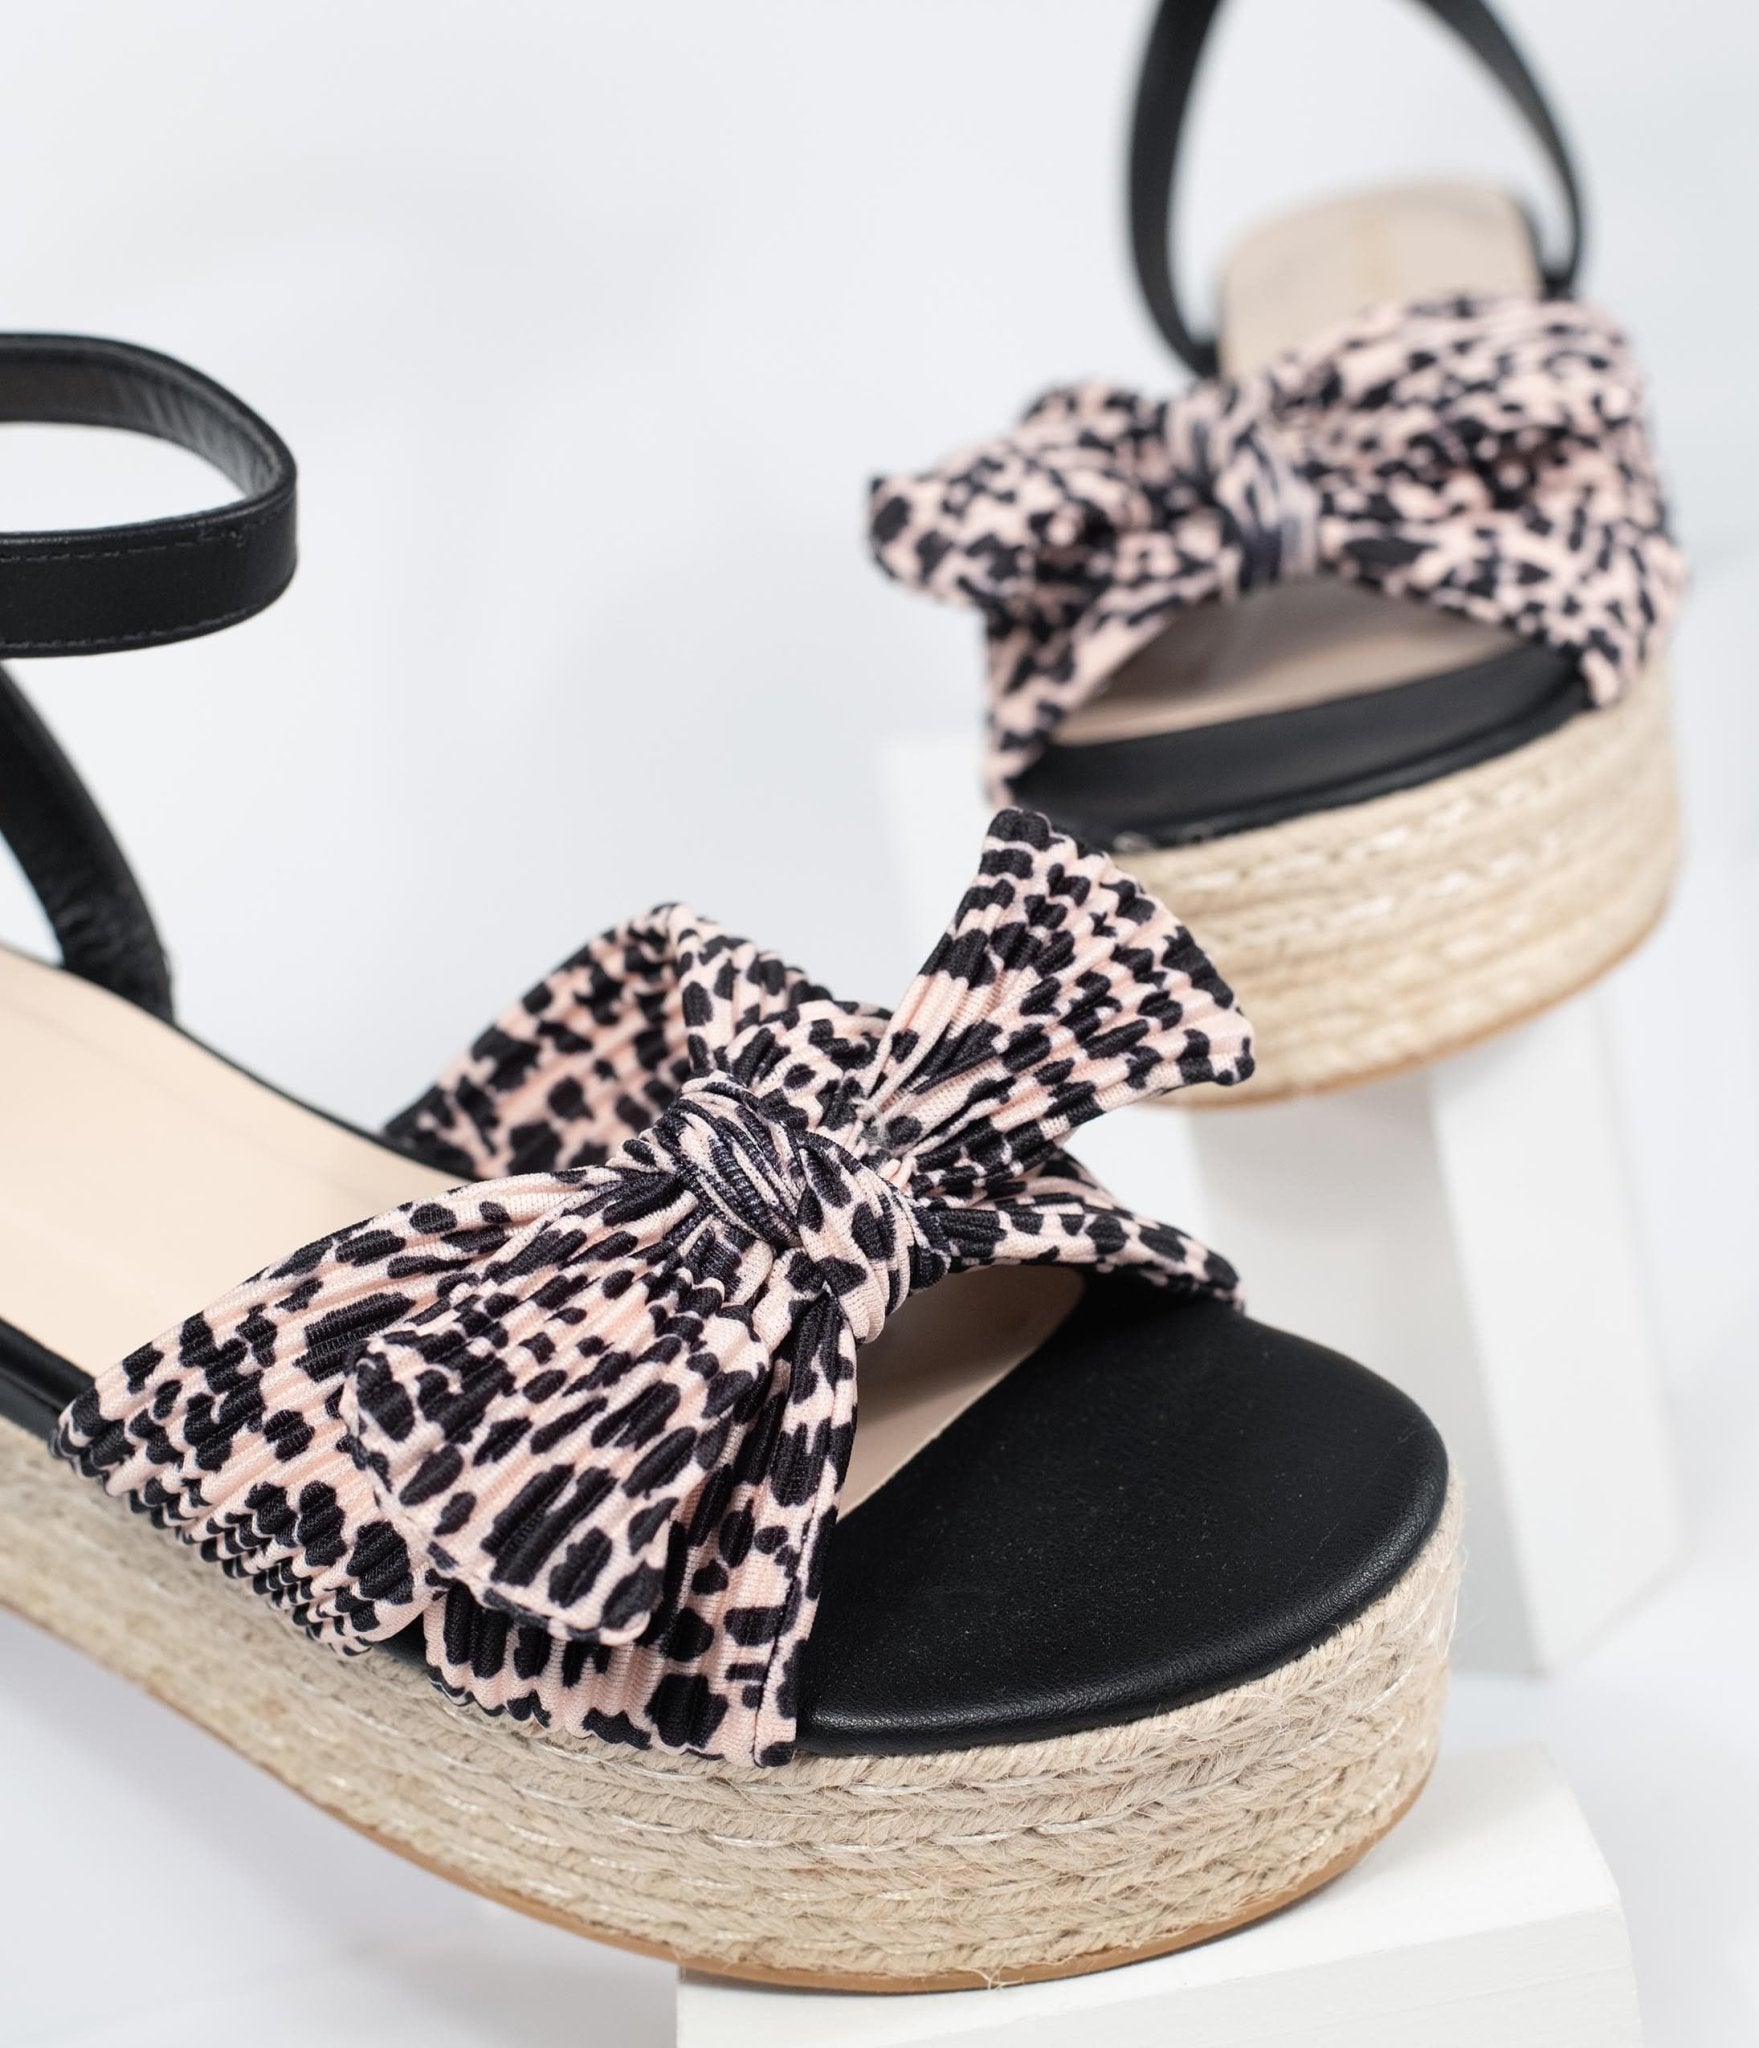 Black & Cheetah Print Espadrilles Platform Sandals - Unique Vintage - Womens, SHOES, SANDALS